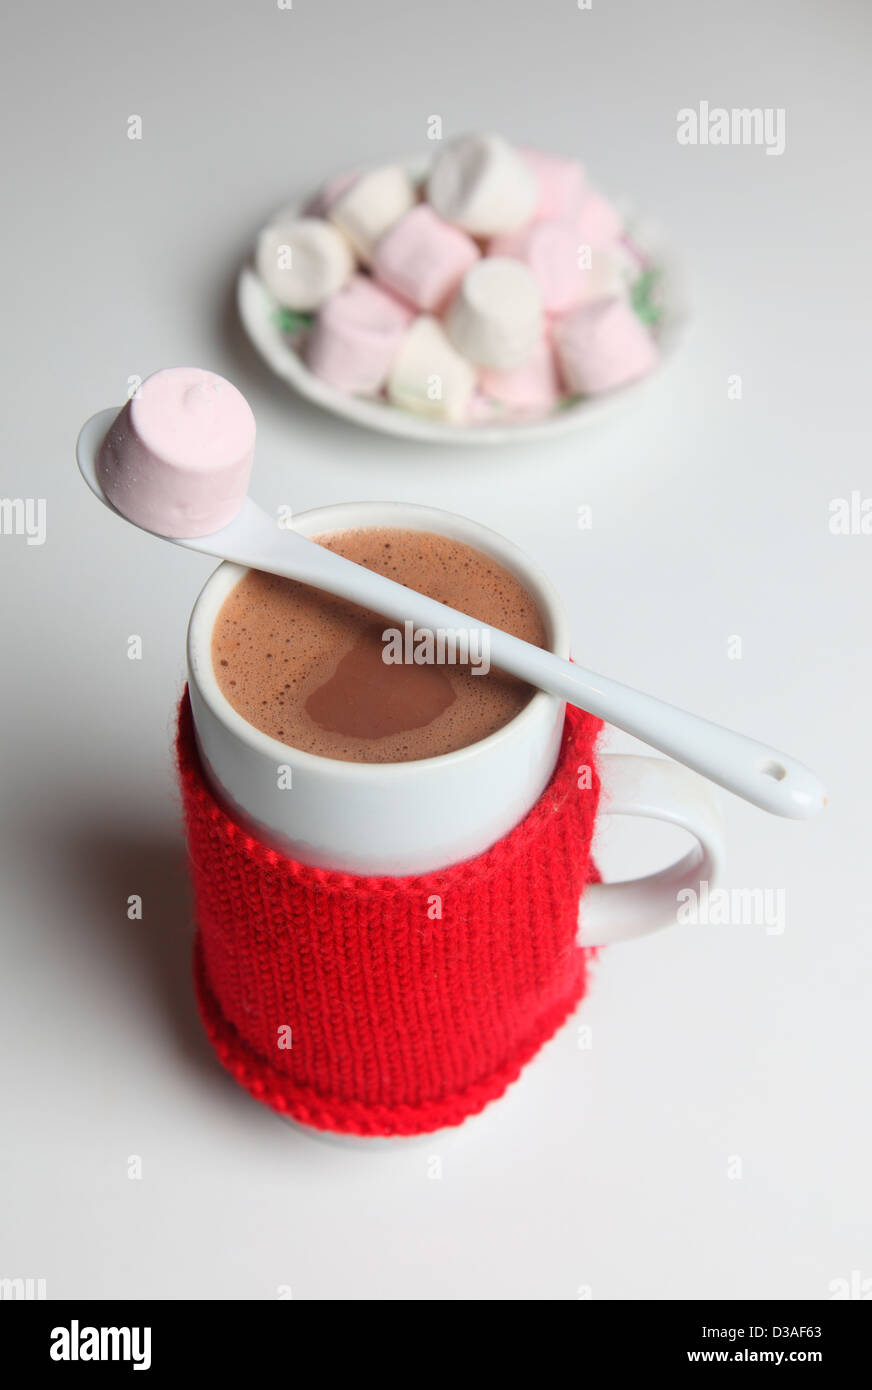 Cocoa and marshmallows Stock Photo